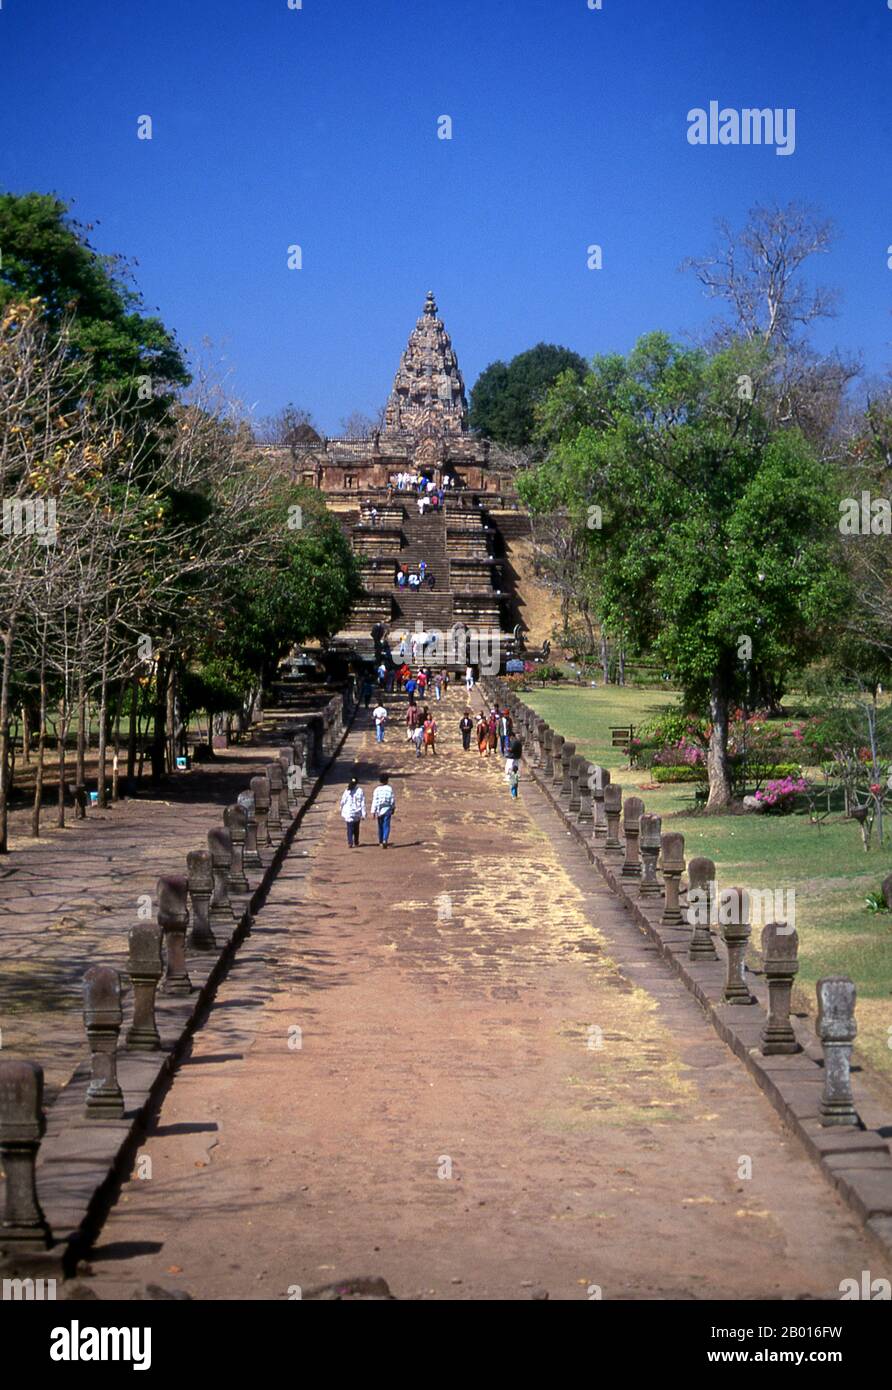 Thaïlande: Voie de procession menant à l'escalier en pierre à tête de Naga, Prasat Hin Phanom Rung, province de Buriram.Prasat Hin Phanom Rung (château de pierre de Phanom Rung) est un complexe de temples Khmers situé sur le bord d'un volcan éteint à 1,320 pieds au-dessus du niveau de la mer, dans la province de Buriram dans la région d'Isaan en Thaïlande.Il a été construit en grès et en laterite aux 10ème à 13ème siècles.C'était un sanctuaire hindou dédié à Shiva, et symbolise le Mont Kailash, sa demeure céleste. Banque D'Images